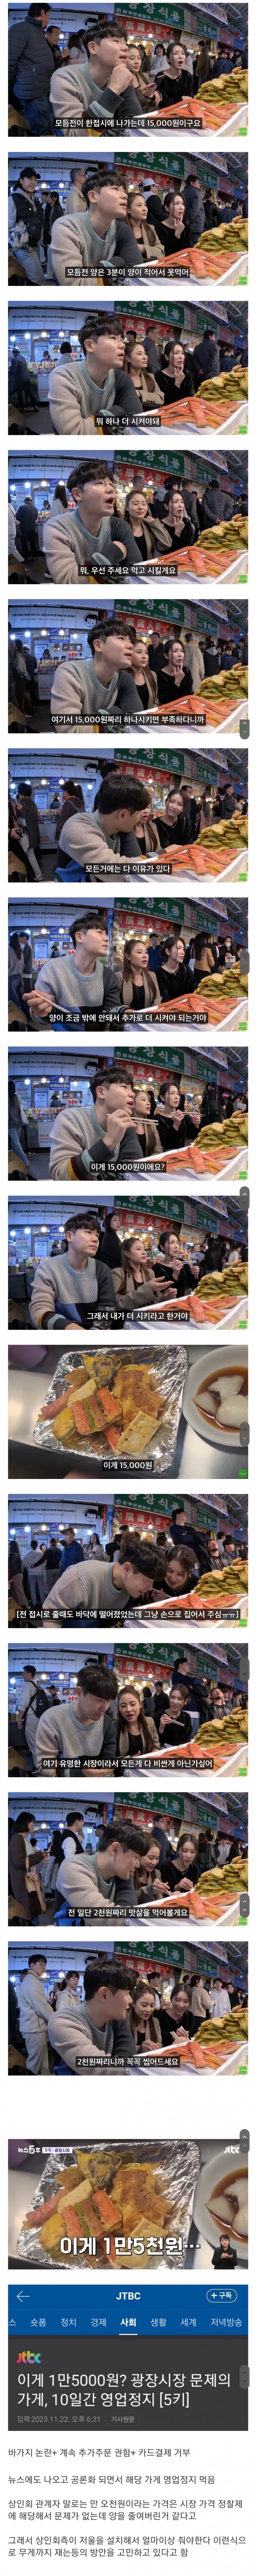 外国人観光客に15000ウォンの食べ物を売って議論を呼んでいる広蔵市場